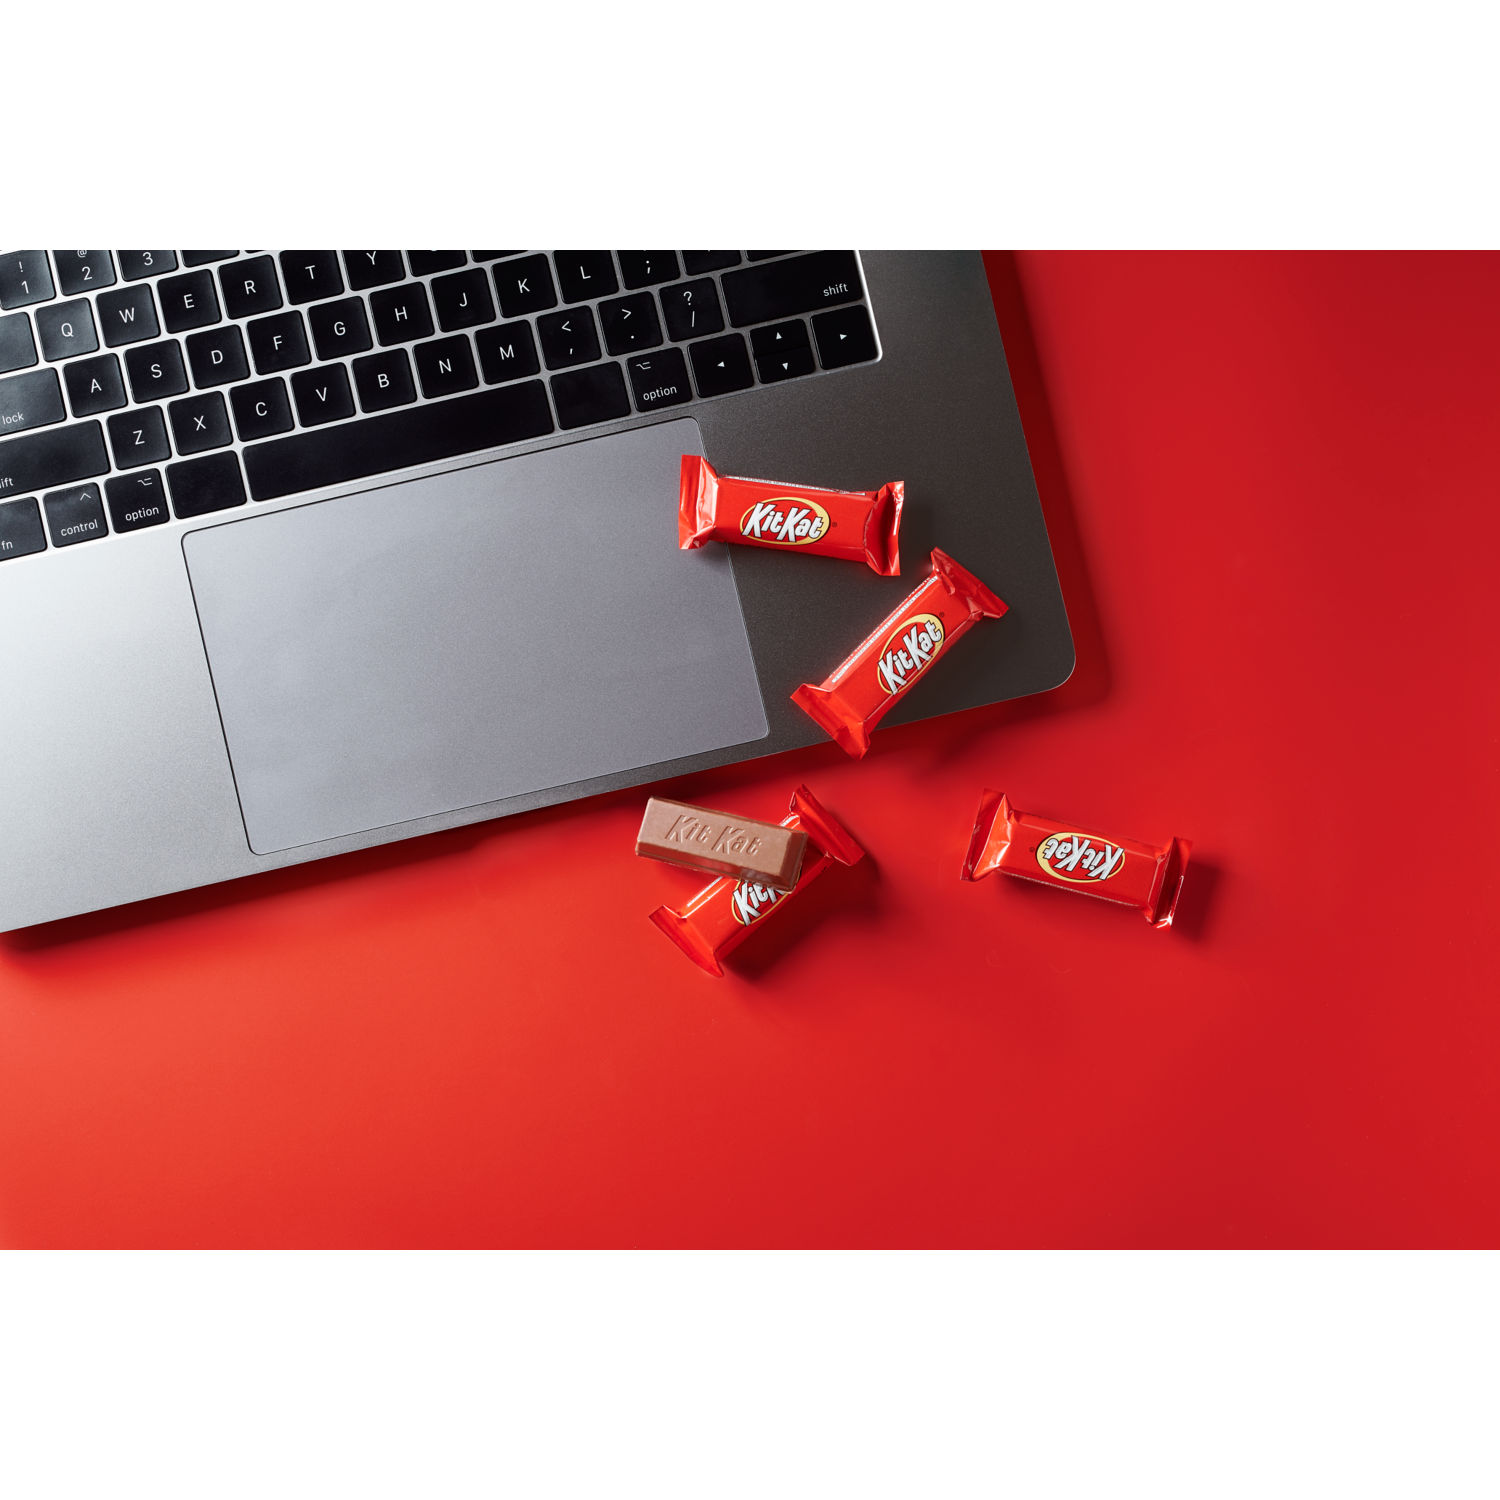 KIT KAT® Holiday Milk Chocolate Miniatures Candy Bars, 7.5 oz bag